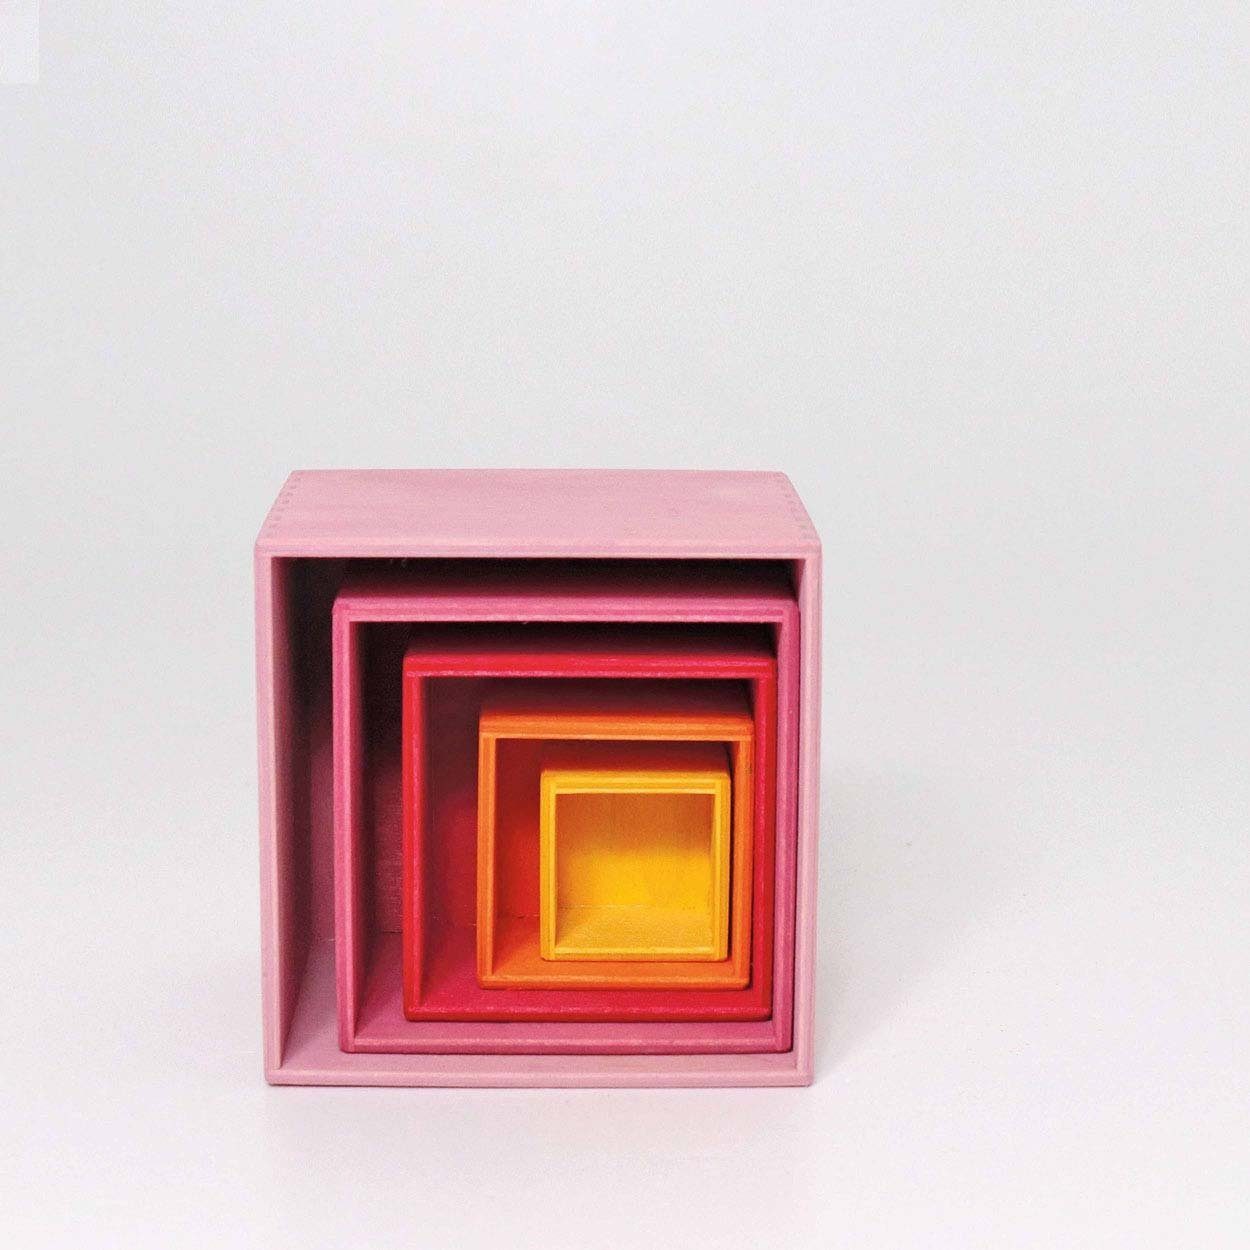 GRIMM´S Spiel und Holz Design Stapelspielzeug Kistensatz Lollipop rosa 5 Teile Holzspielzeug Stapelturm Aufbewahrung